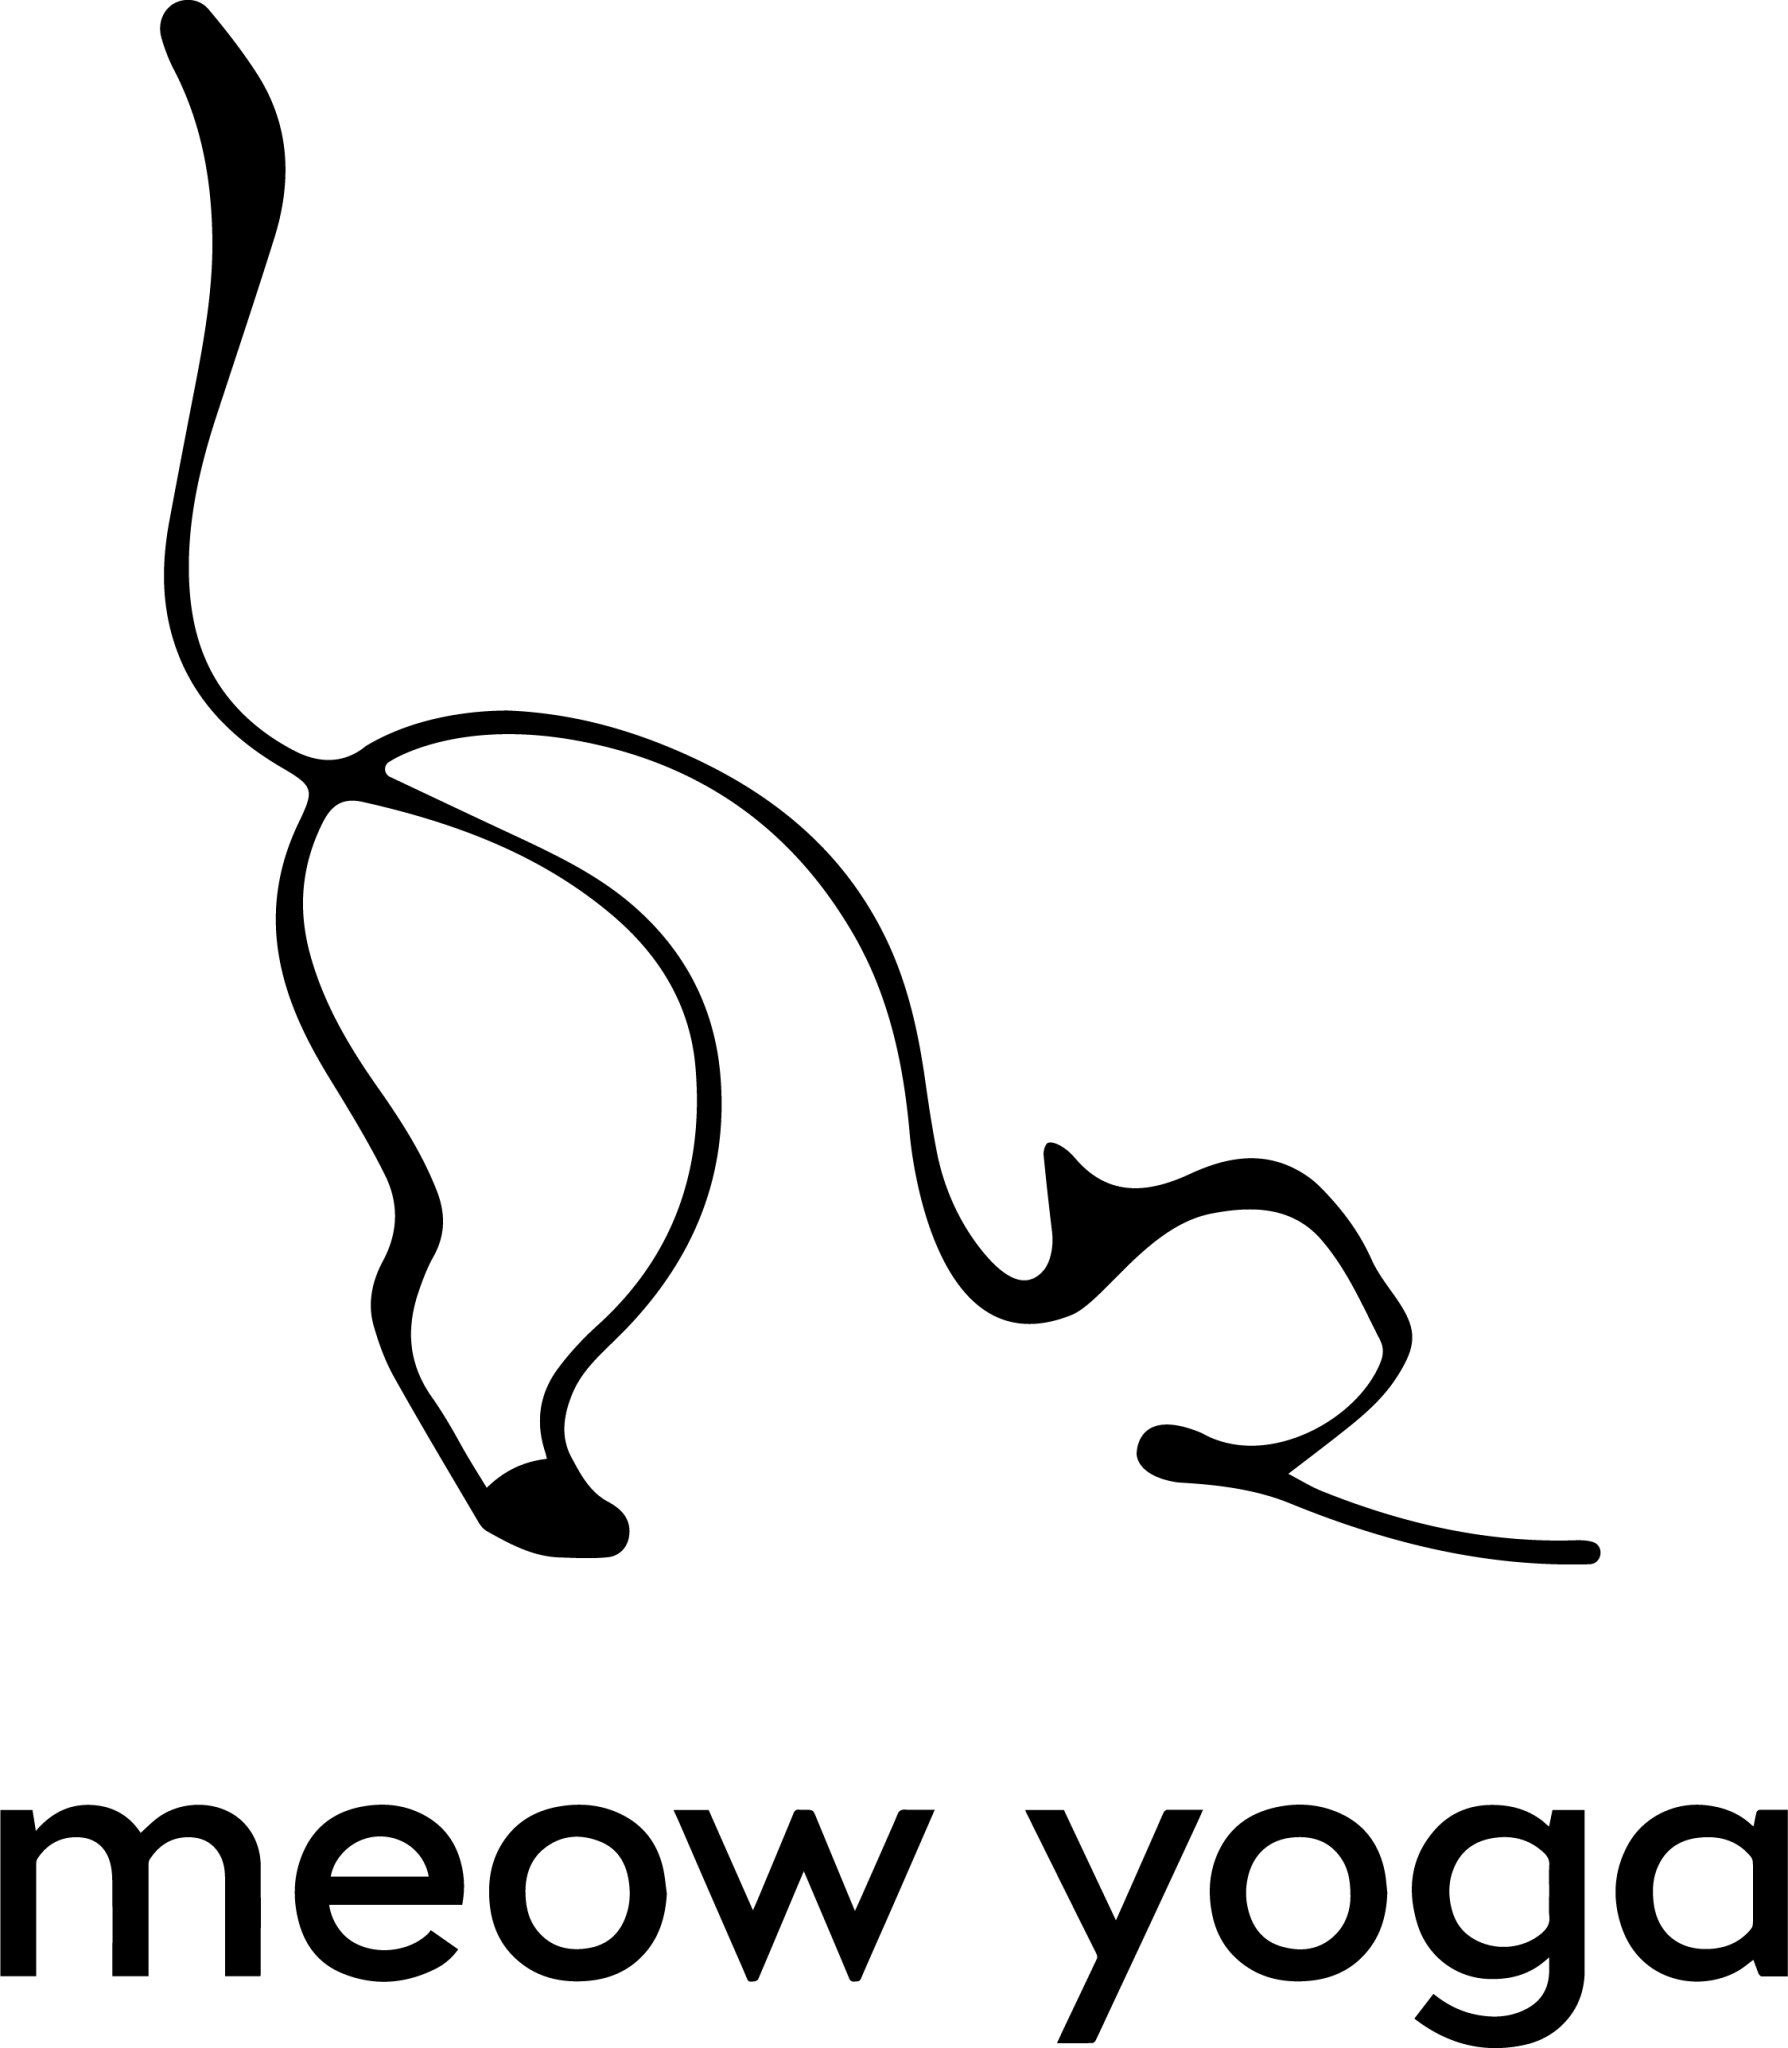 Meow Yoga